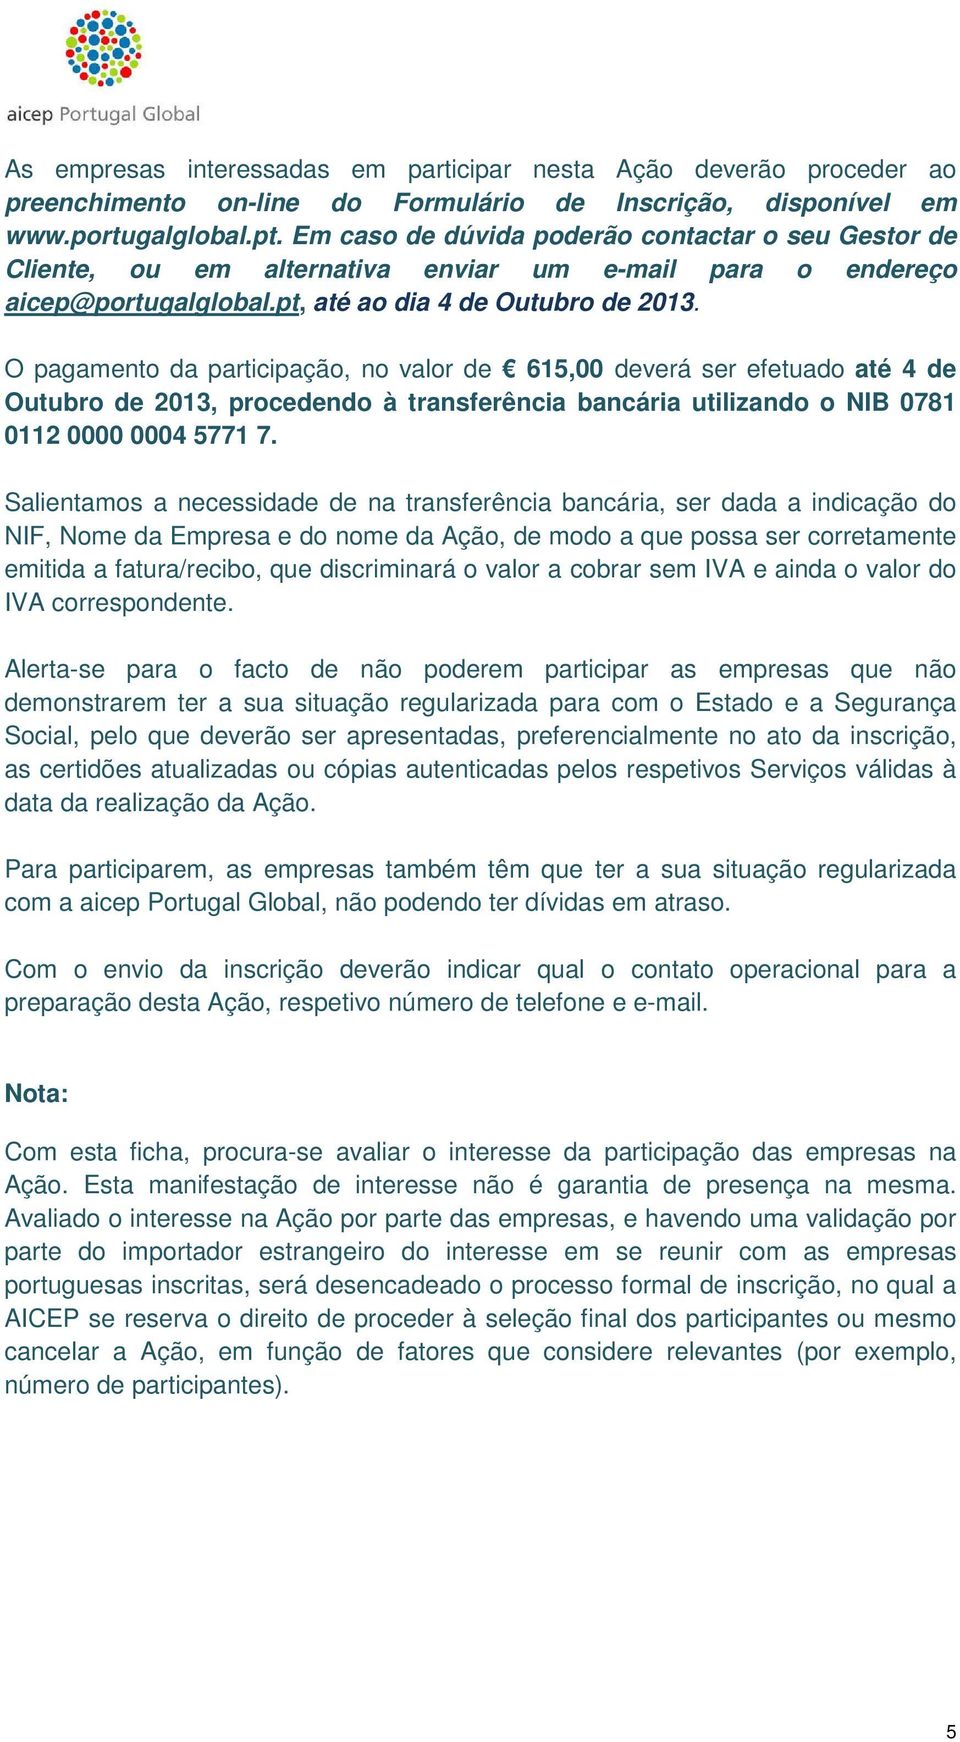 O pagamento da participação, no valor de 615,00 deverá ser efetuado até 4 de Outubro de 2013, procedendo à transferência bancária utilizando o NIB 0781 0112 0000 0004 5771 7.